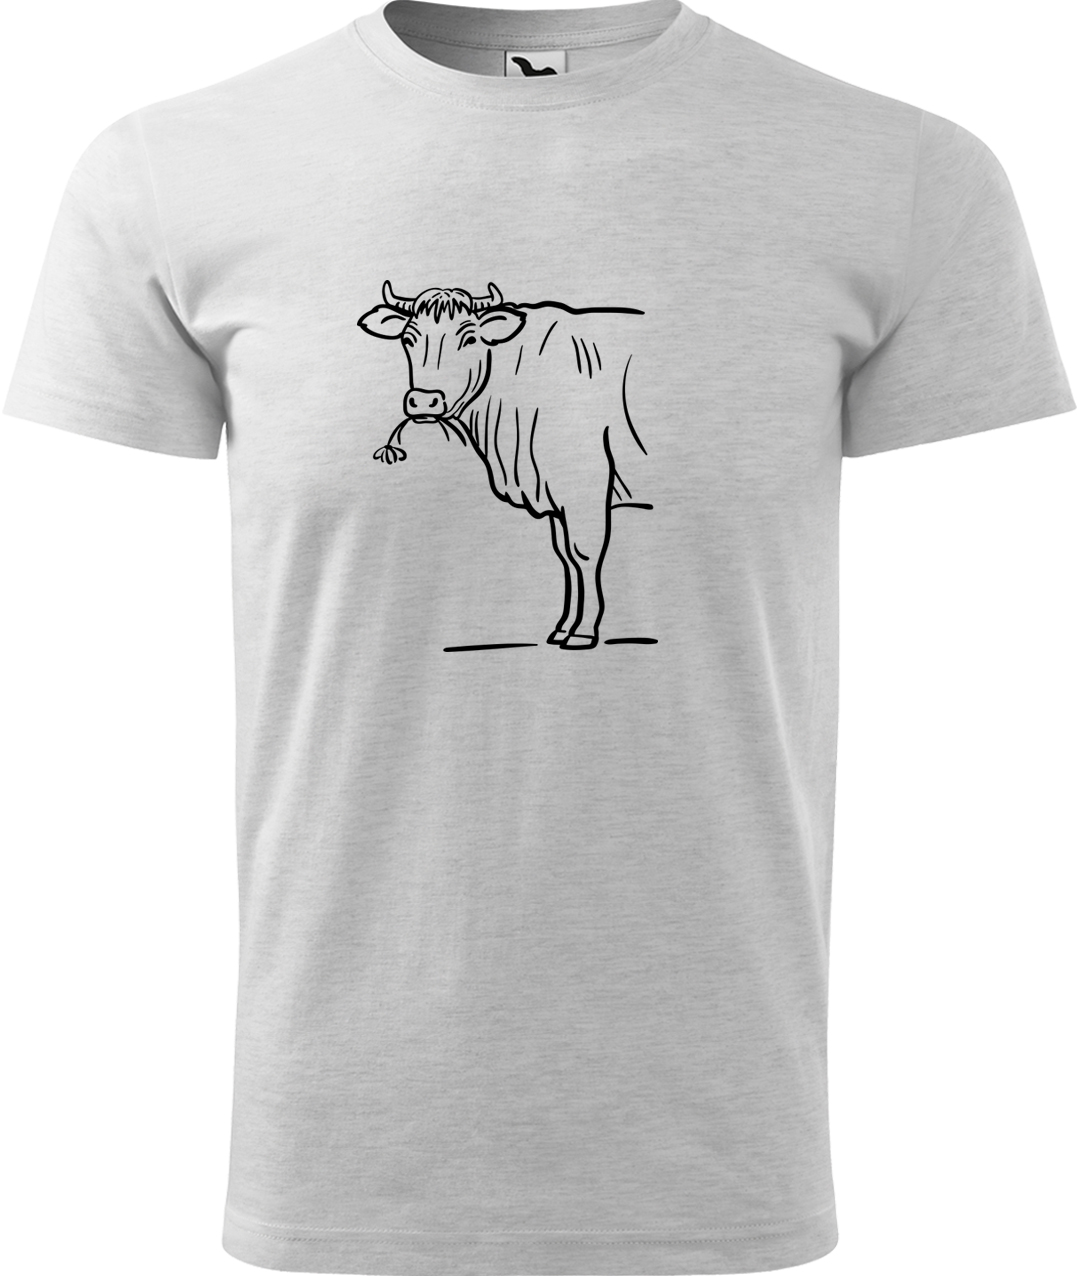 Pánské tričko s krávou - Býk Velikost: L, Barva: Světle šedý melír (03), Střih: pánský